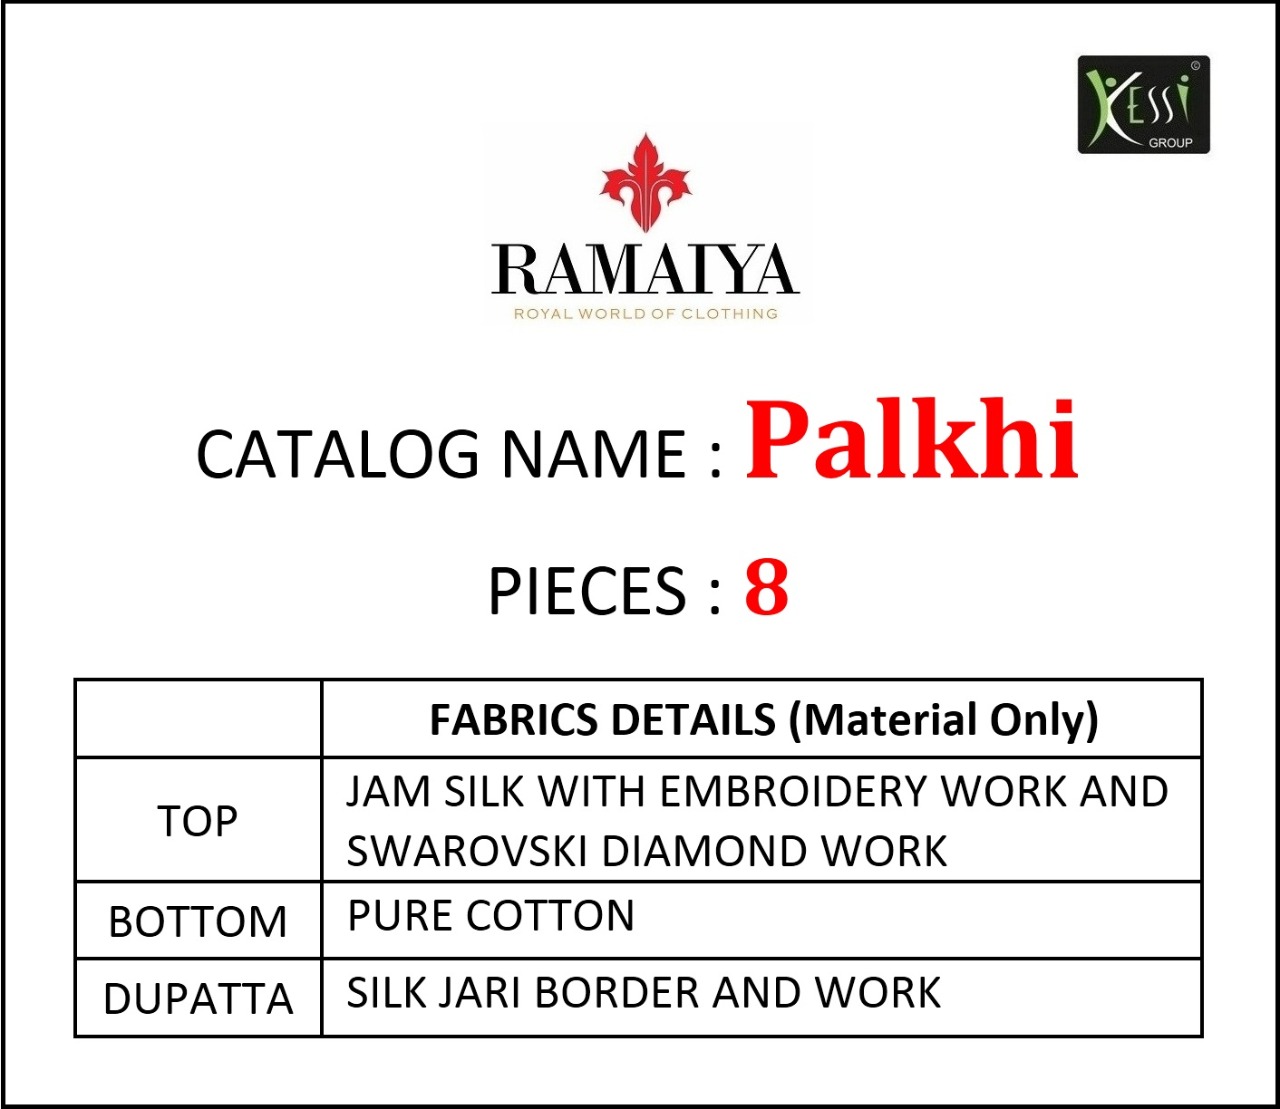 Ramaiya palkhi astonishing style gorgeous stylish look Salwar suits